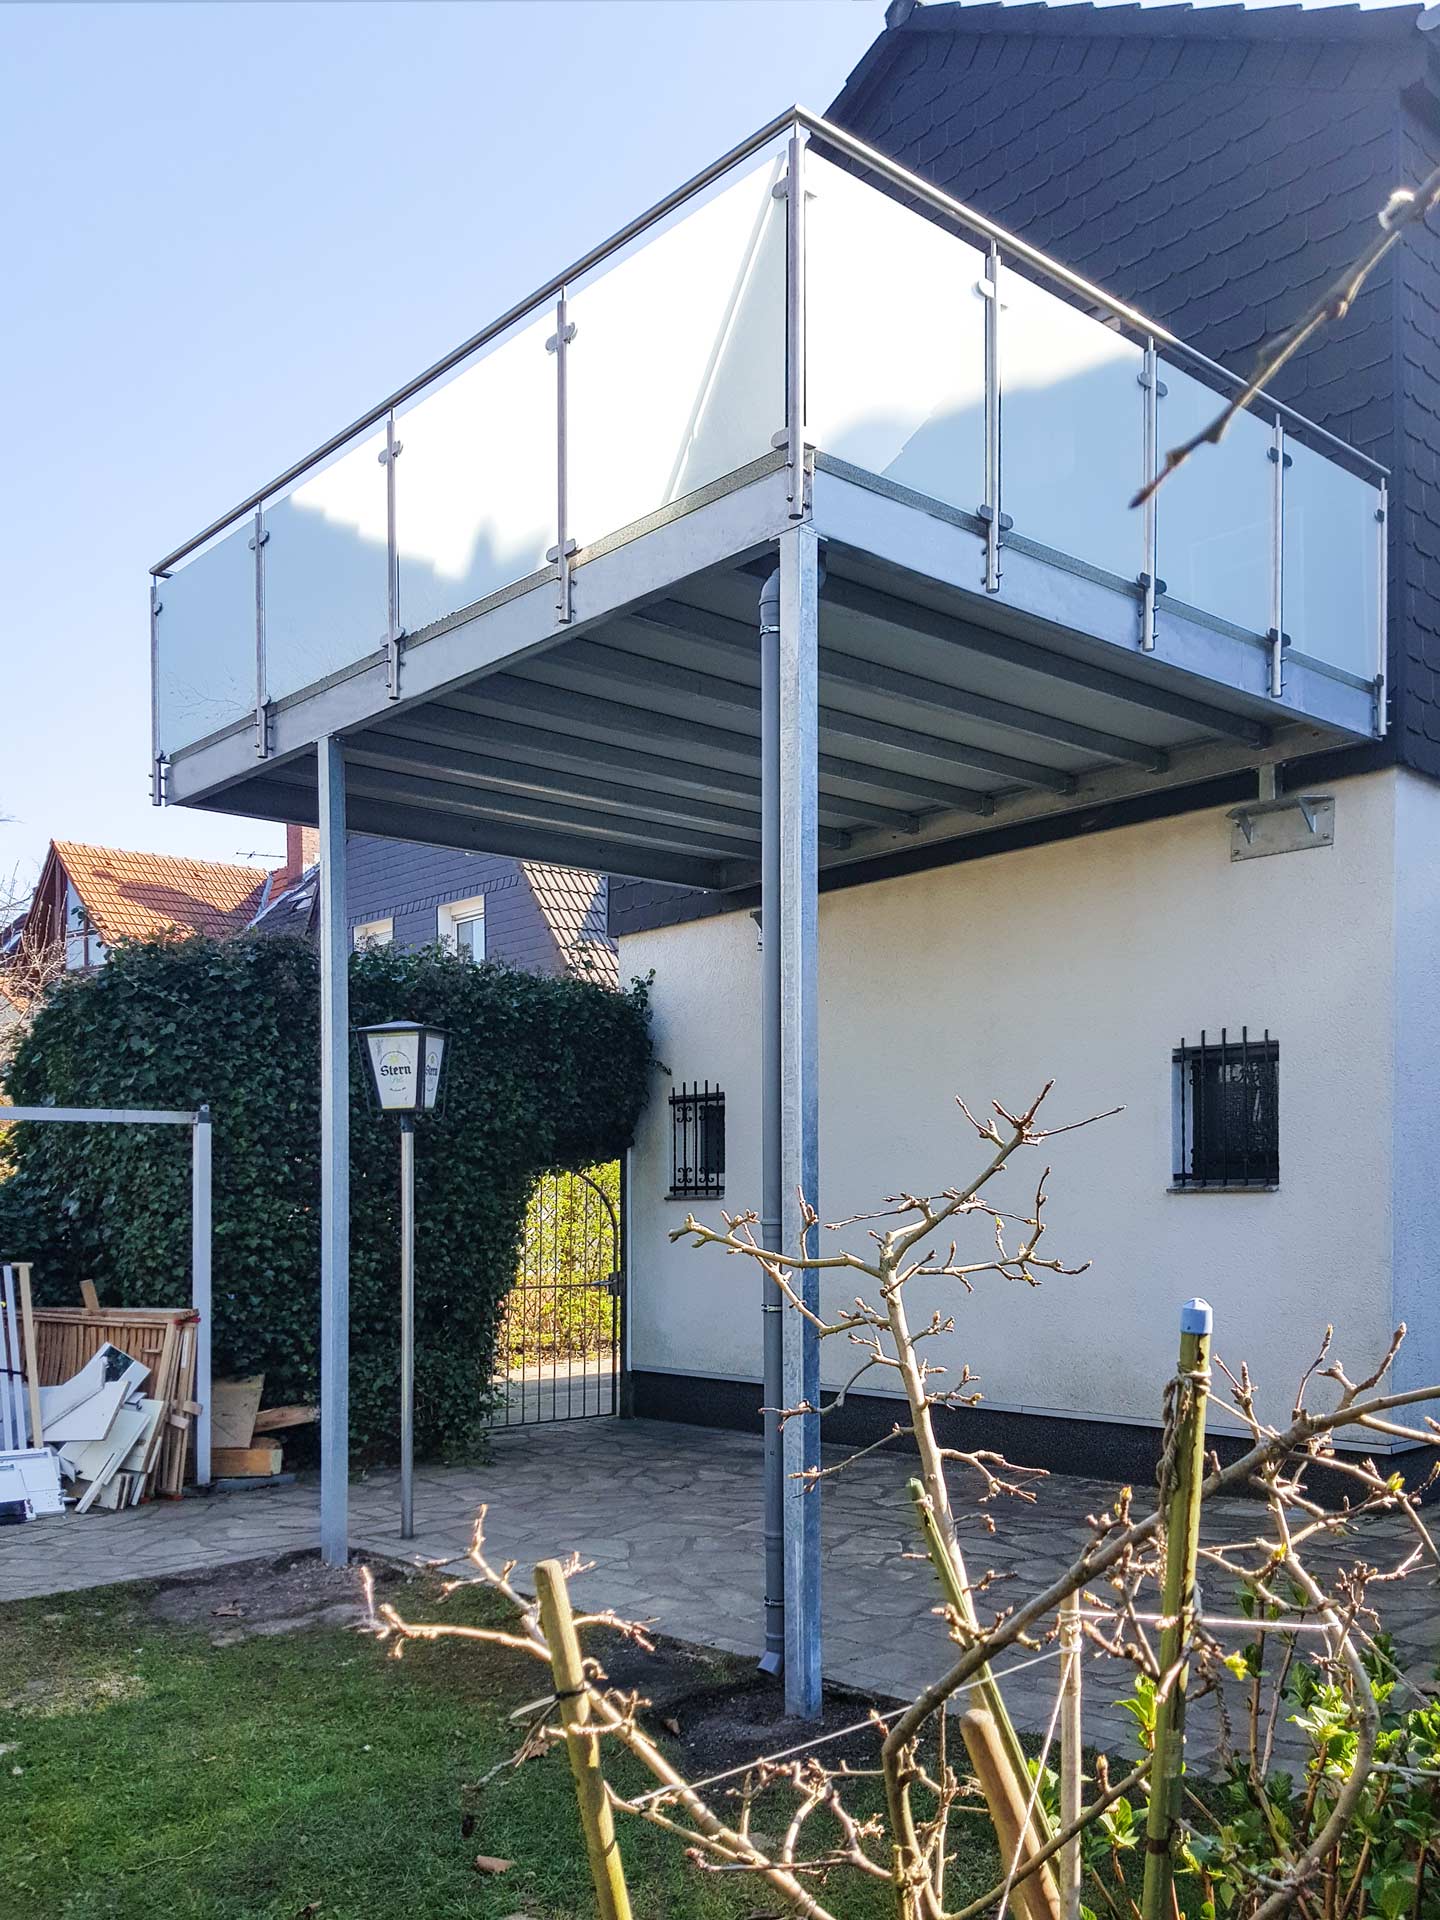 Neuer Balkon: Statik inklusive in Essen, entworfen und gebaut von der Edelstahlschlosserei Nappenfeld aus Mühlheim